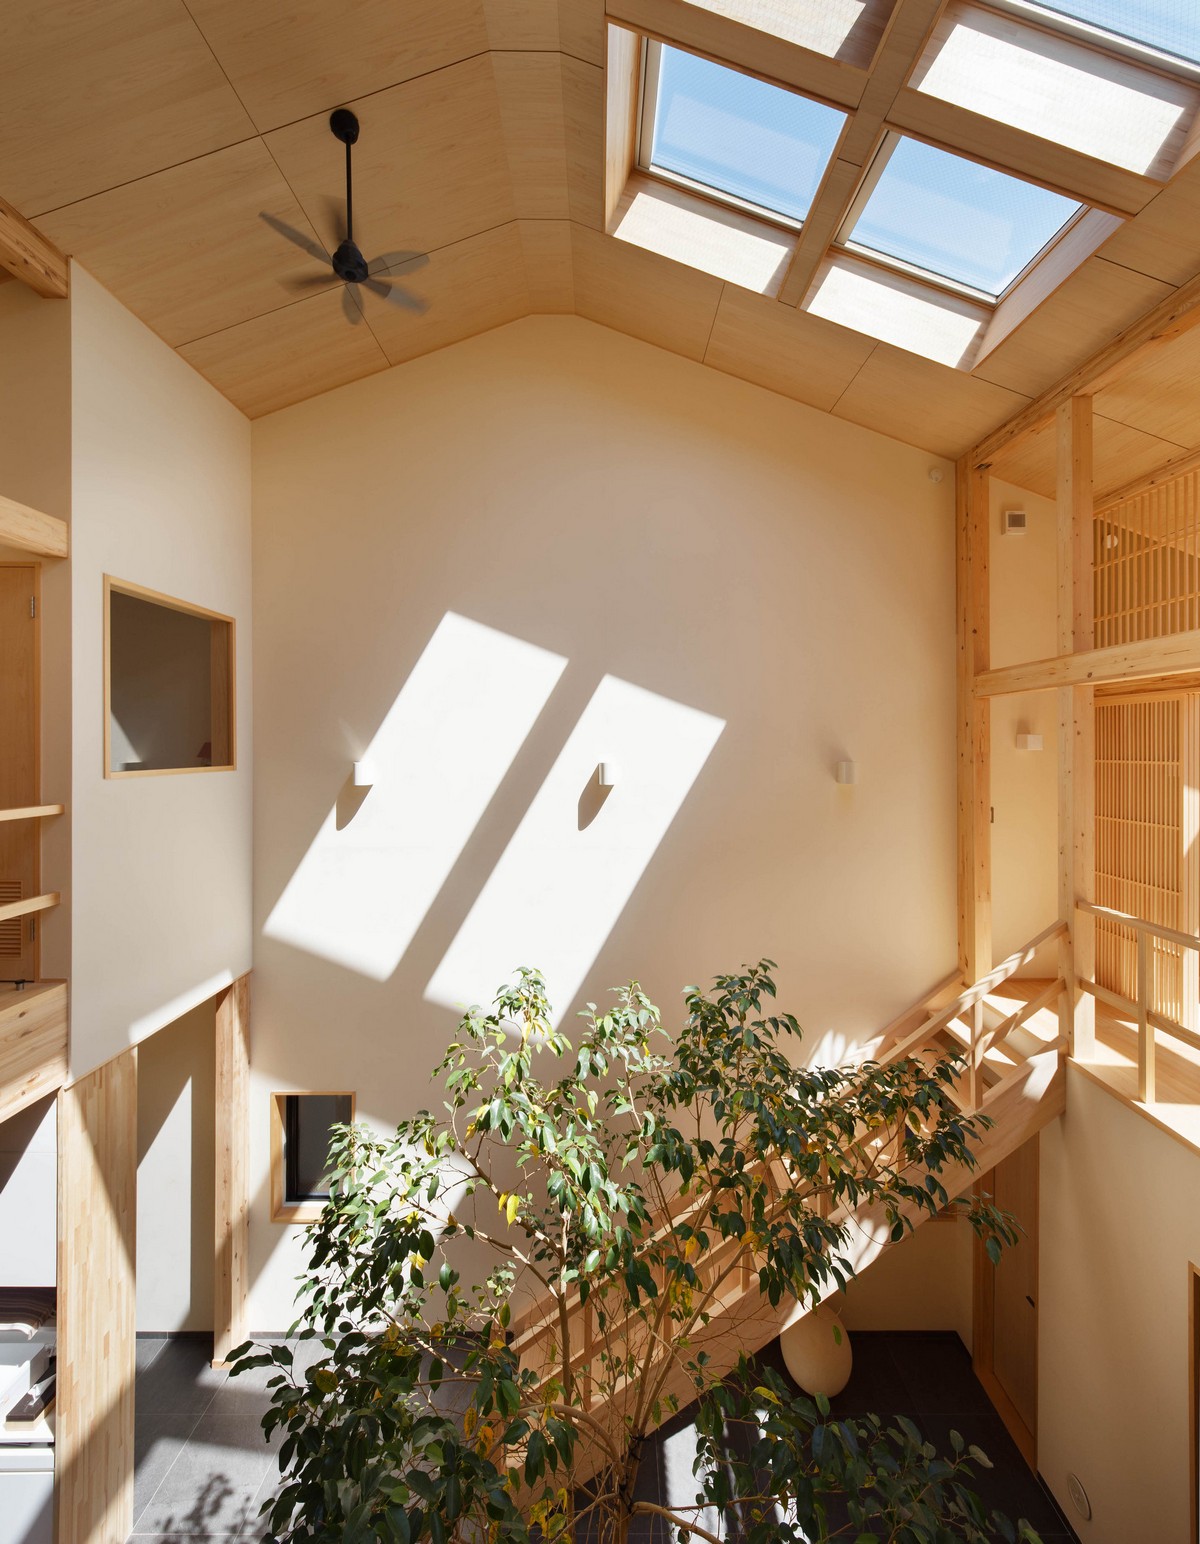 Японский деревянный дом с двориком в Киото участка, Киото, ванной, поскольку, между, похоже, соседние, после, внутренний, дерево, чтобы, пространство, комнату, центре, детей, стороны, исходя, предпочтений, Ванную, разместили